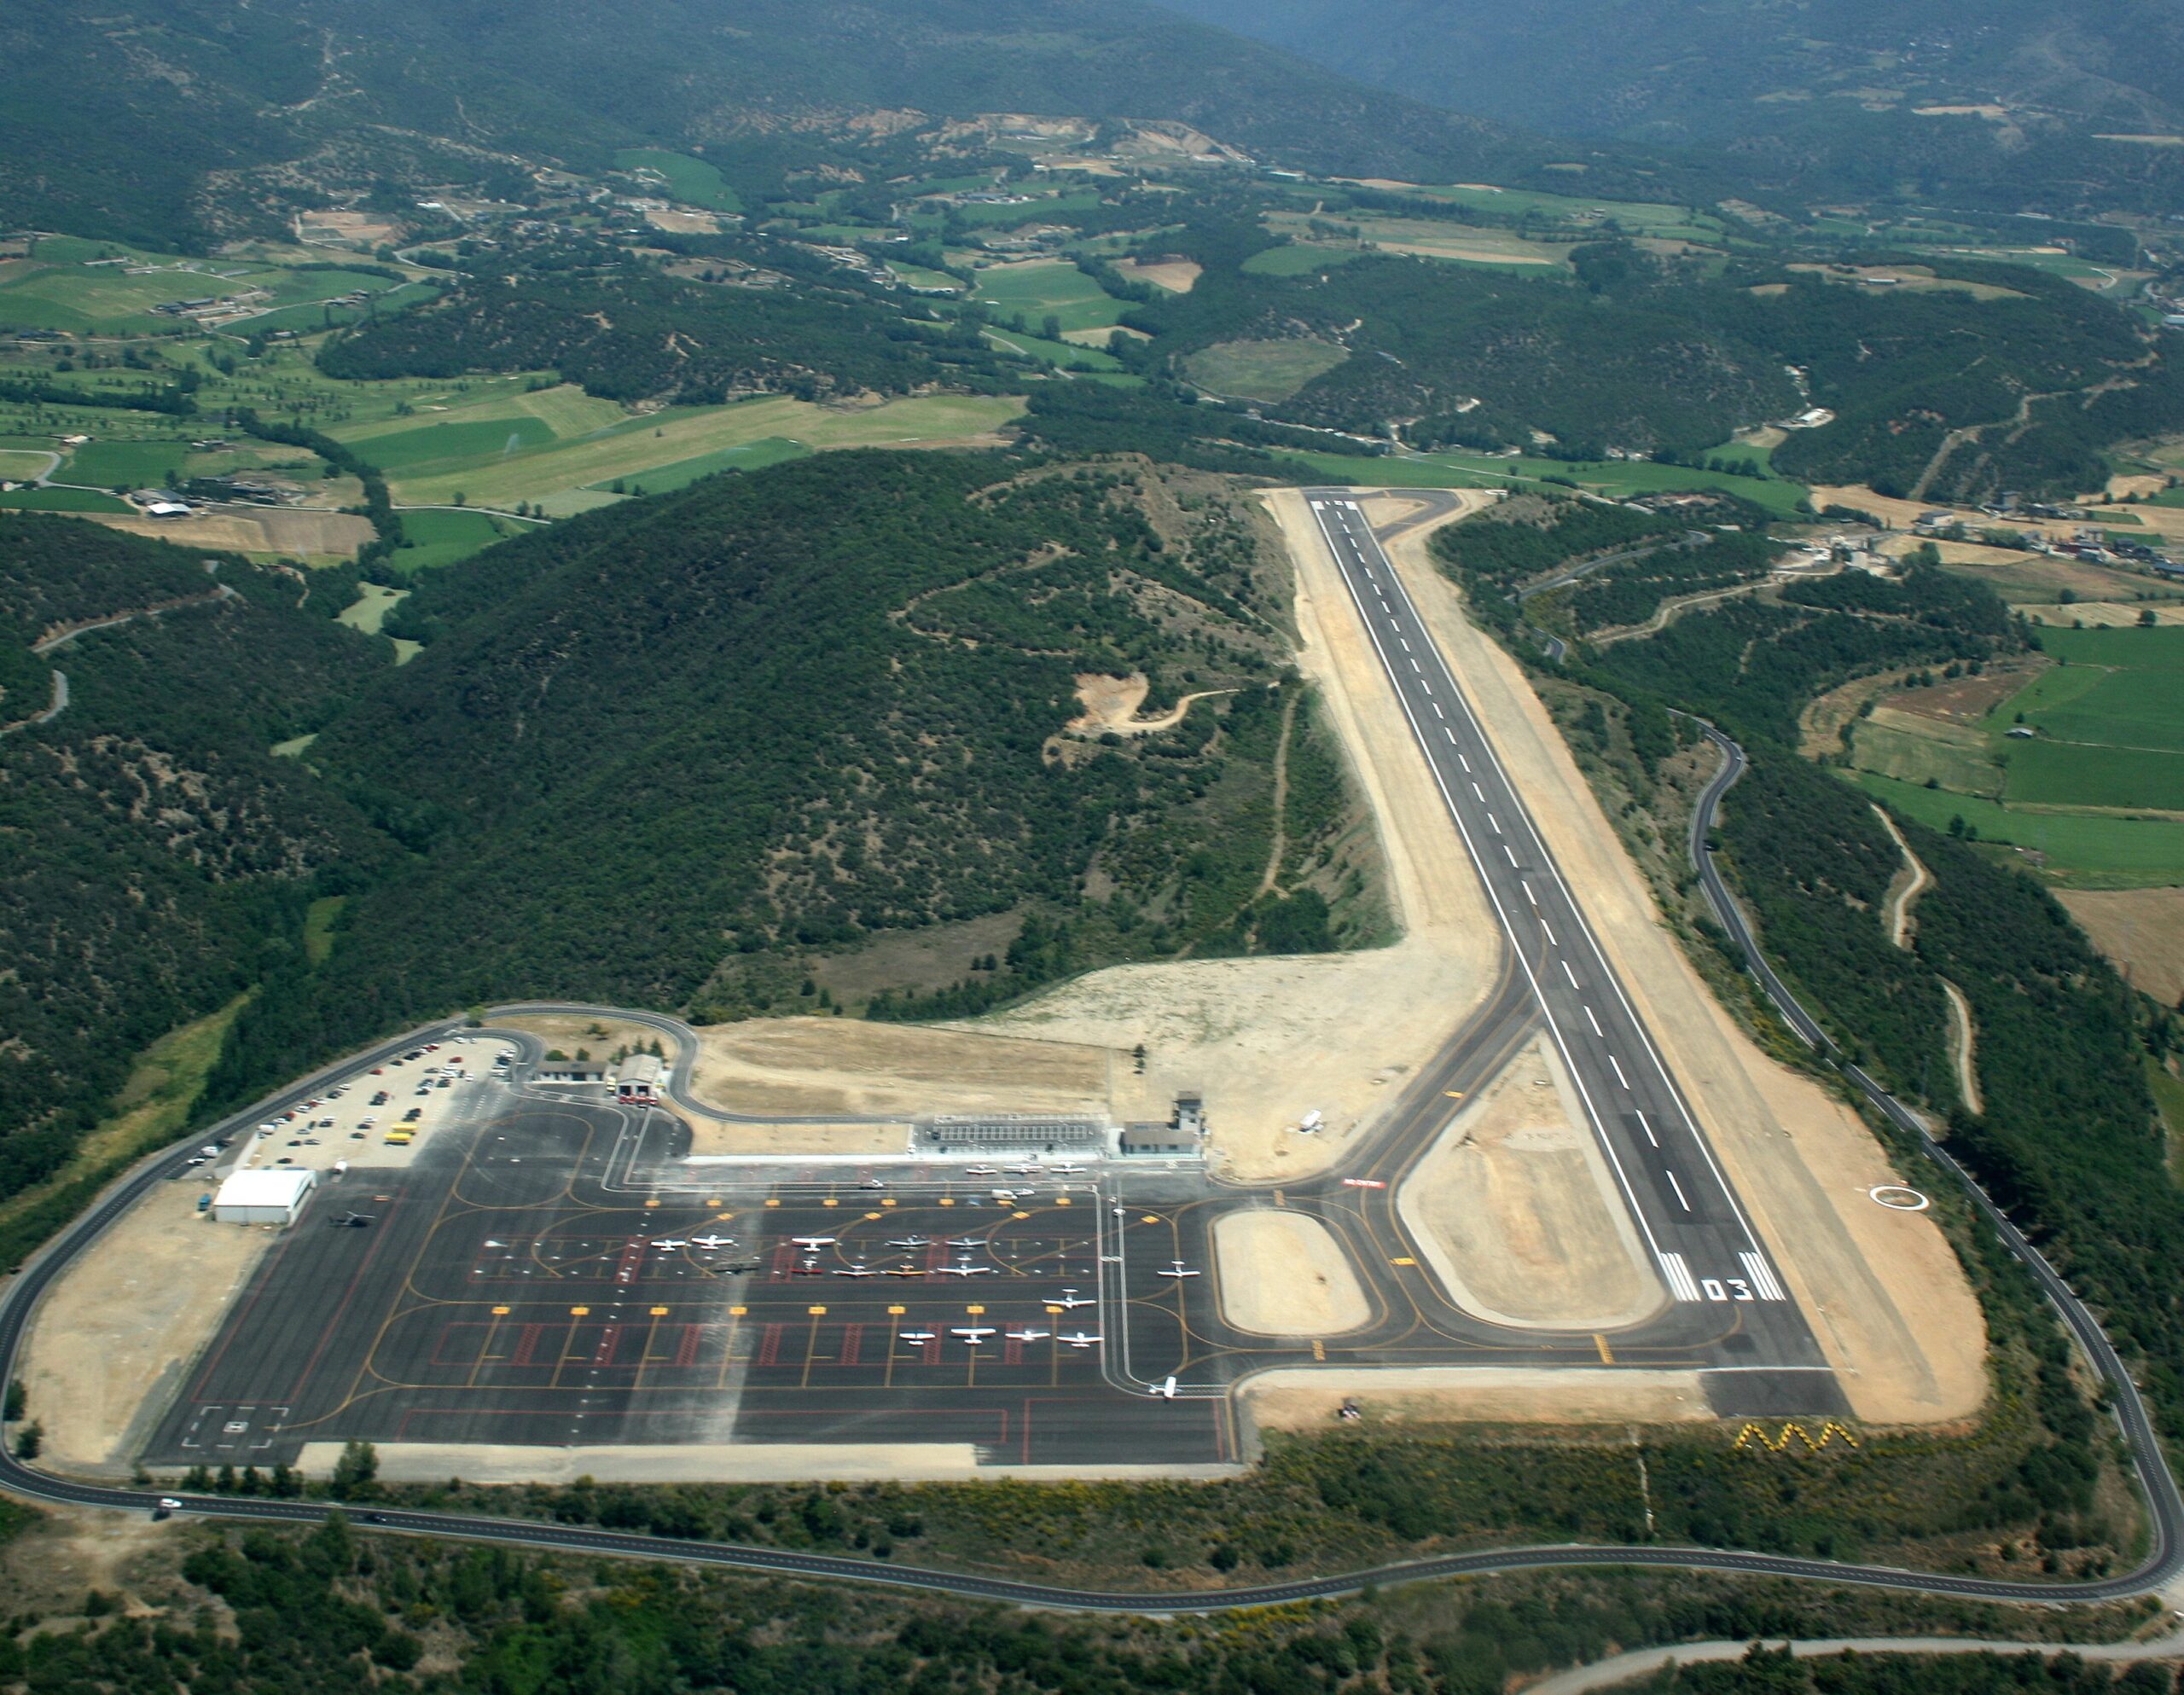 L’aeroport de la Seu d’Urgell